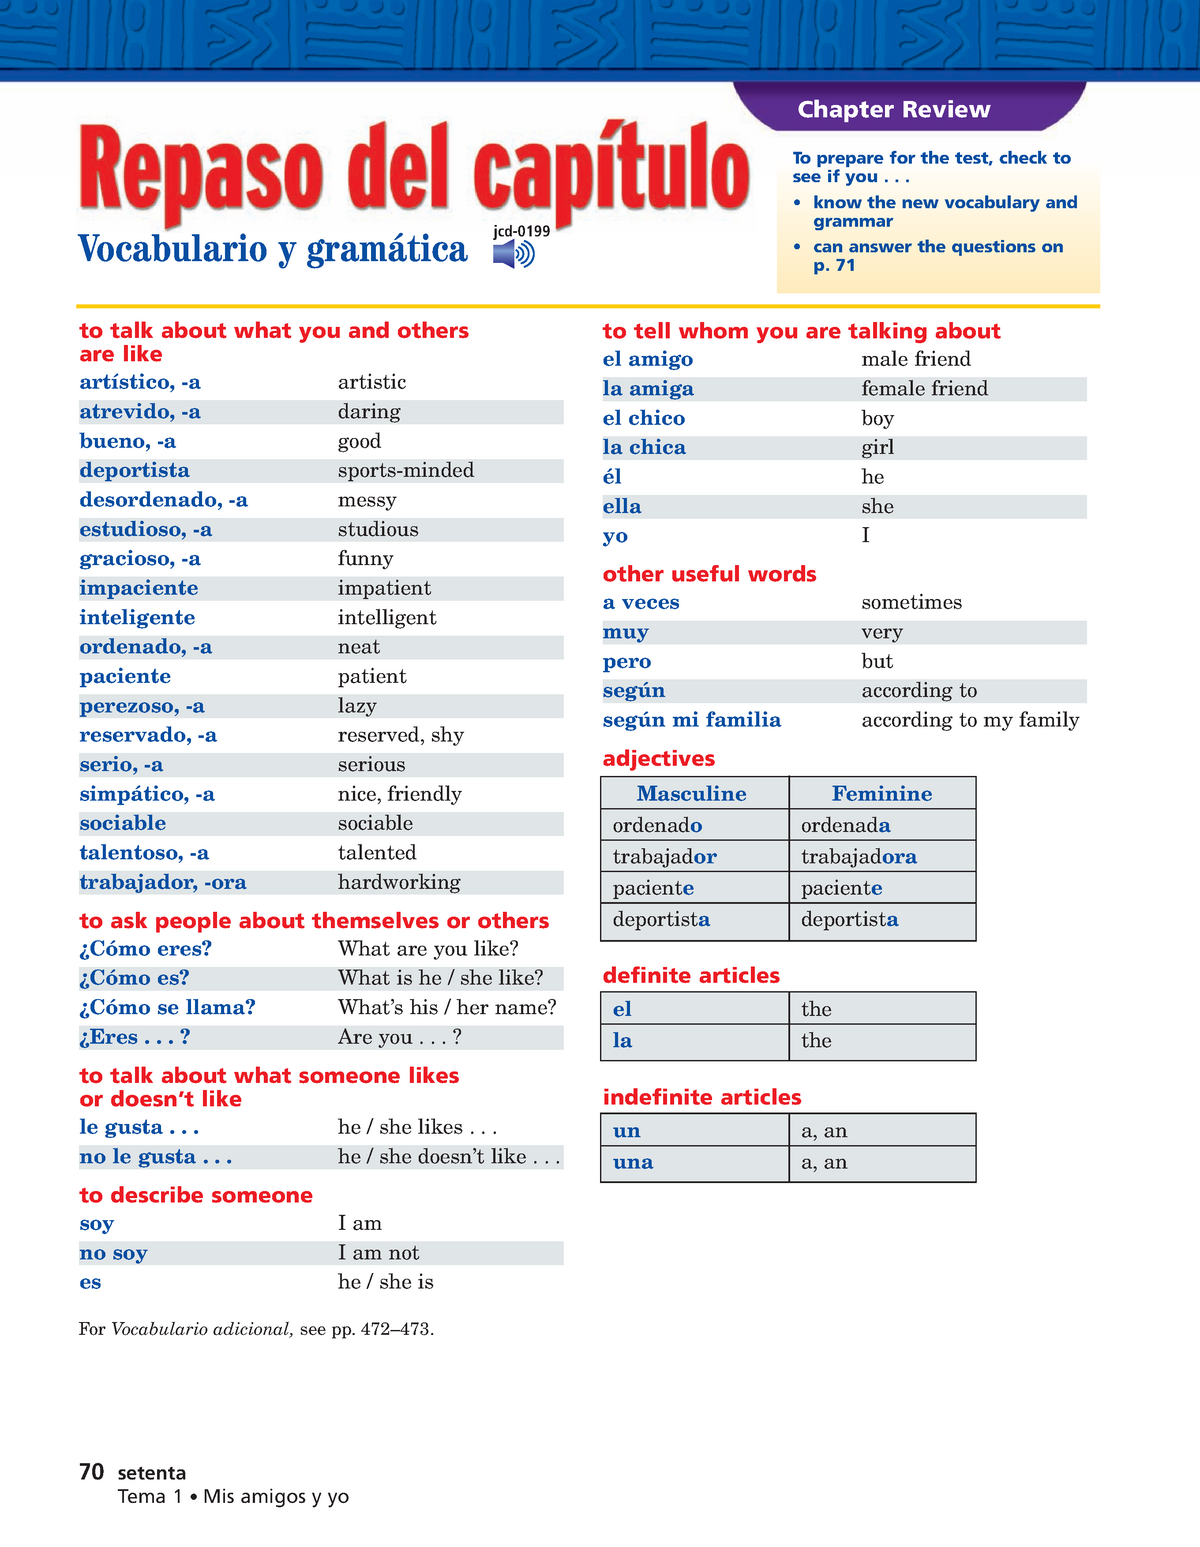 spanish-1-cap-tulo-1b-repaso-adjectives-describing-people-s-personailities-70-setenta-tema